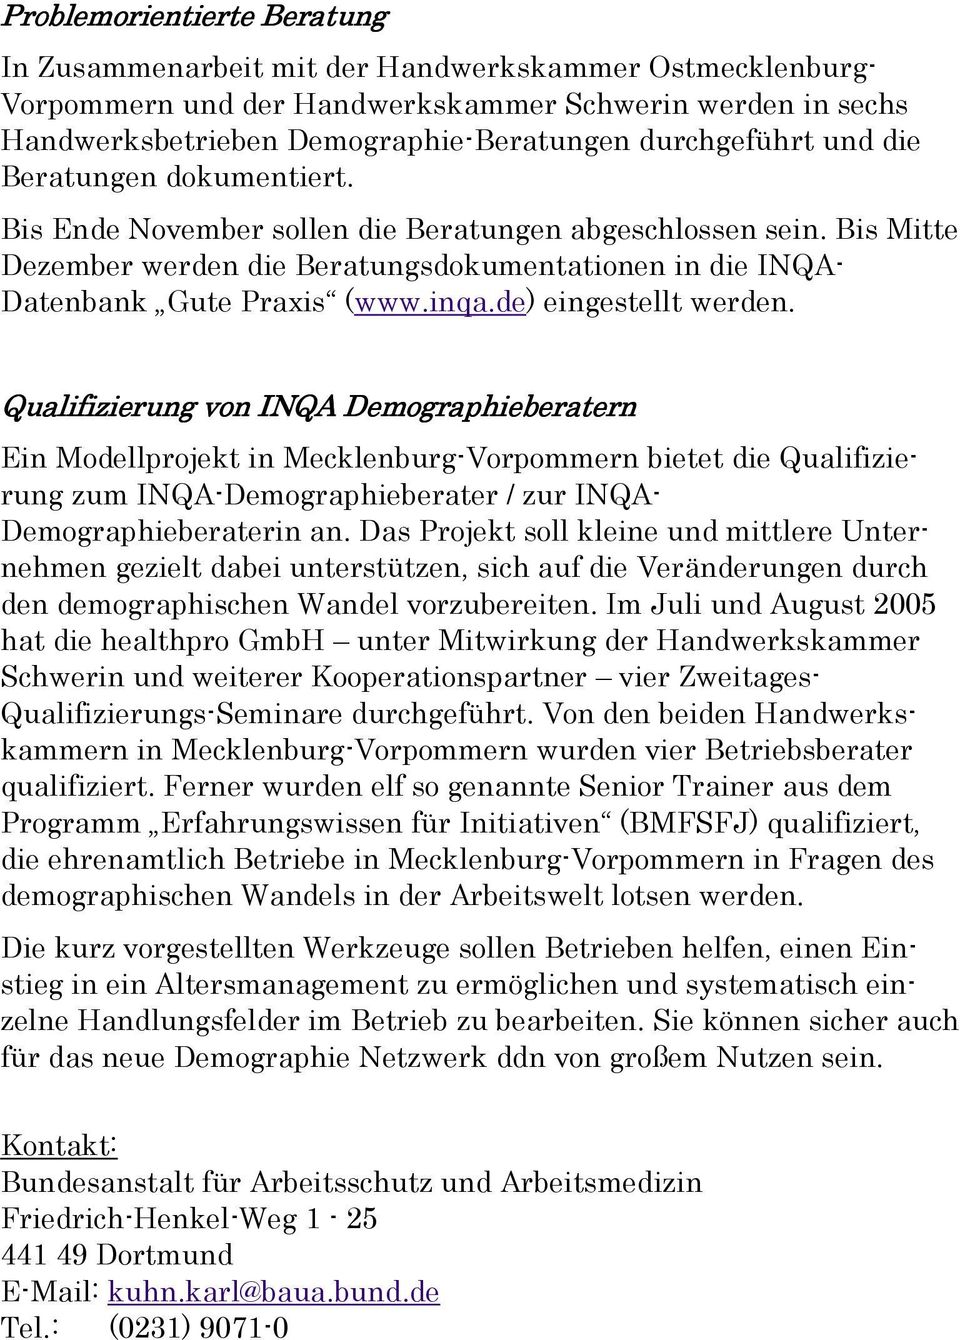 Bis Mitte Dezember werden die Beratungsdokumentationen in die INQA- Datenbank Gute Praxis (www.inqa.de) eingestellt werden.